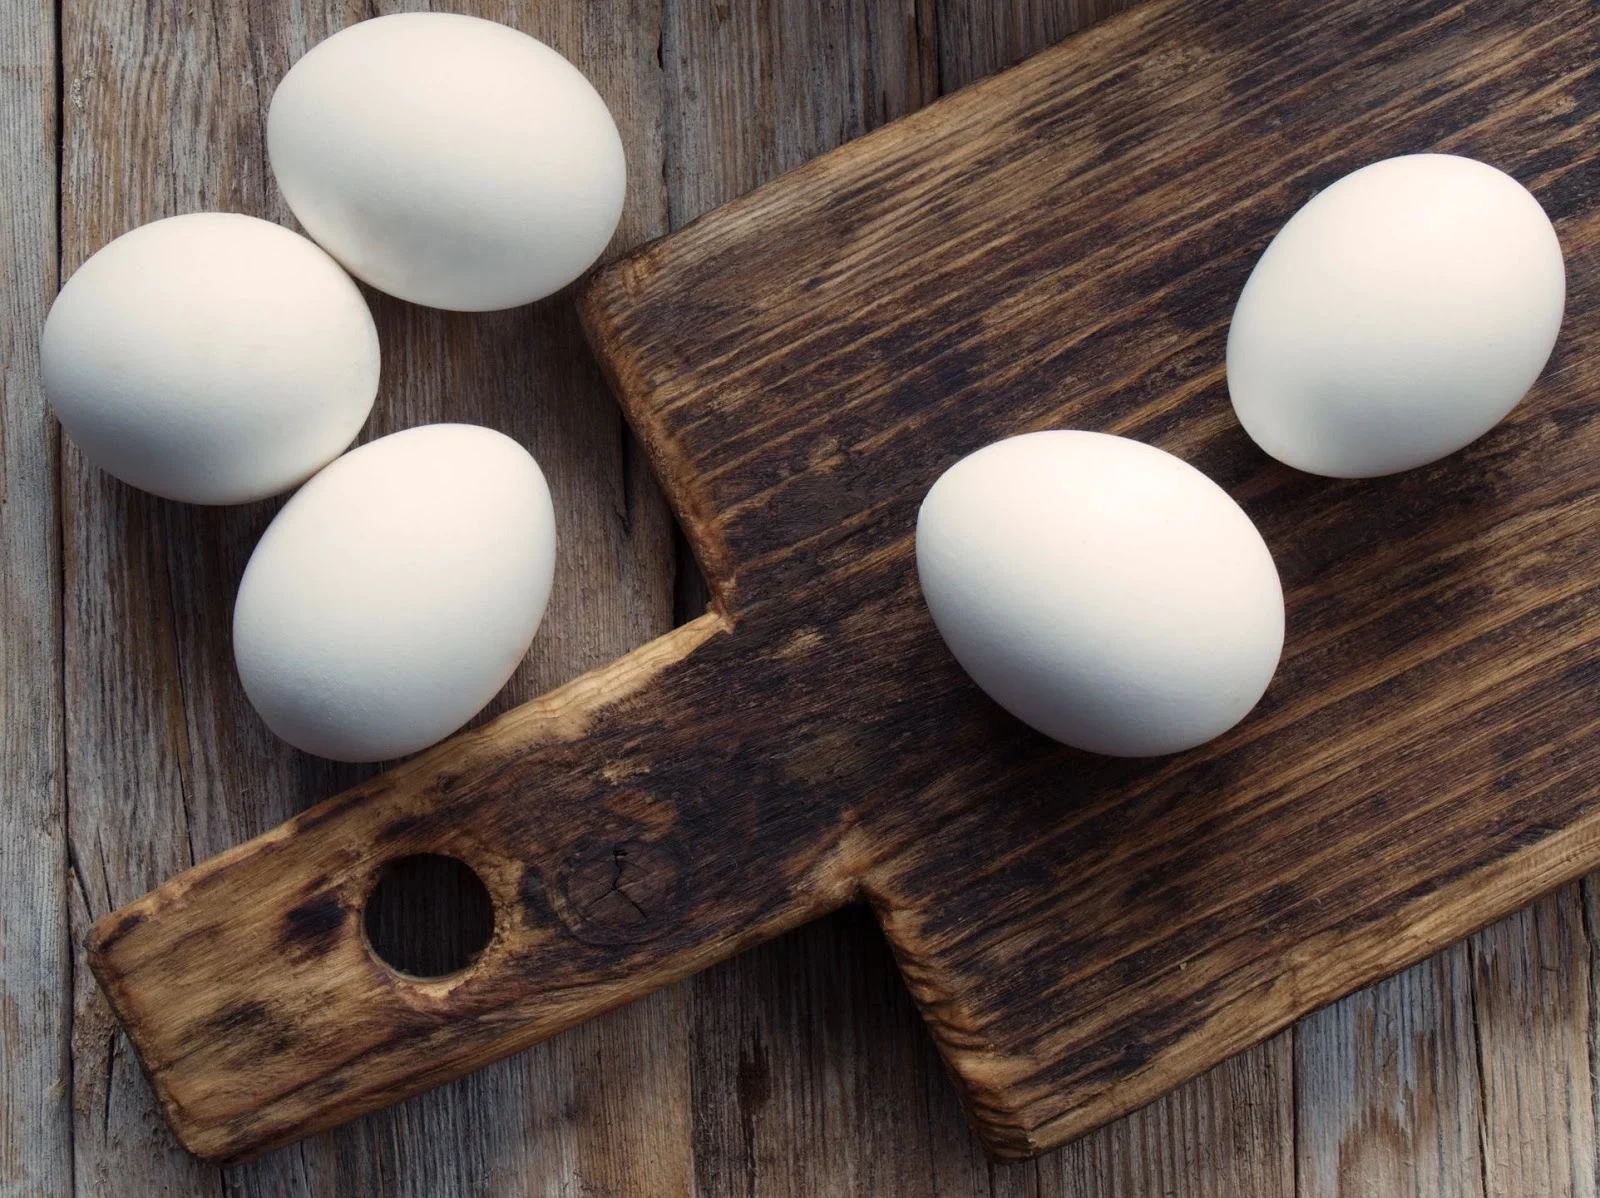 Ovos podem destruir a gravidade? 